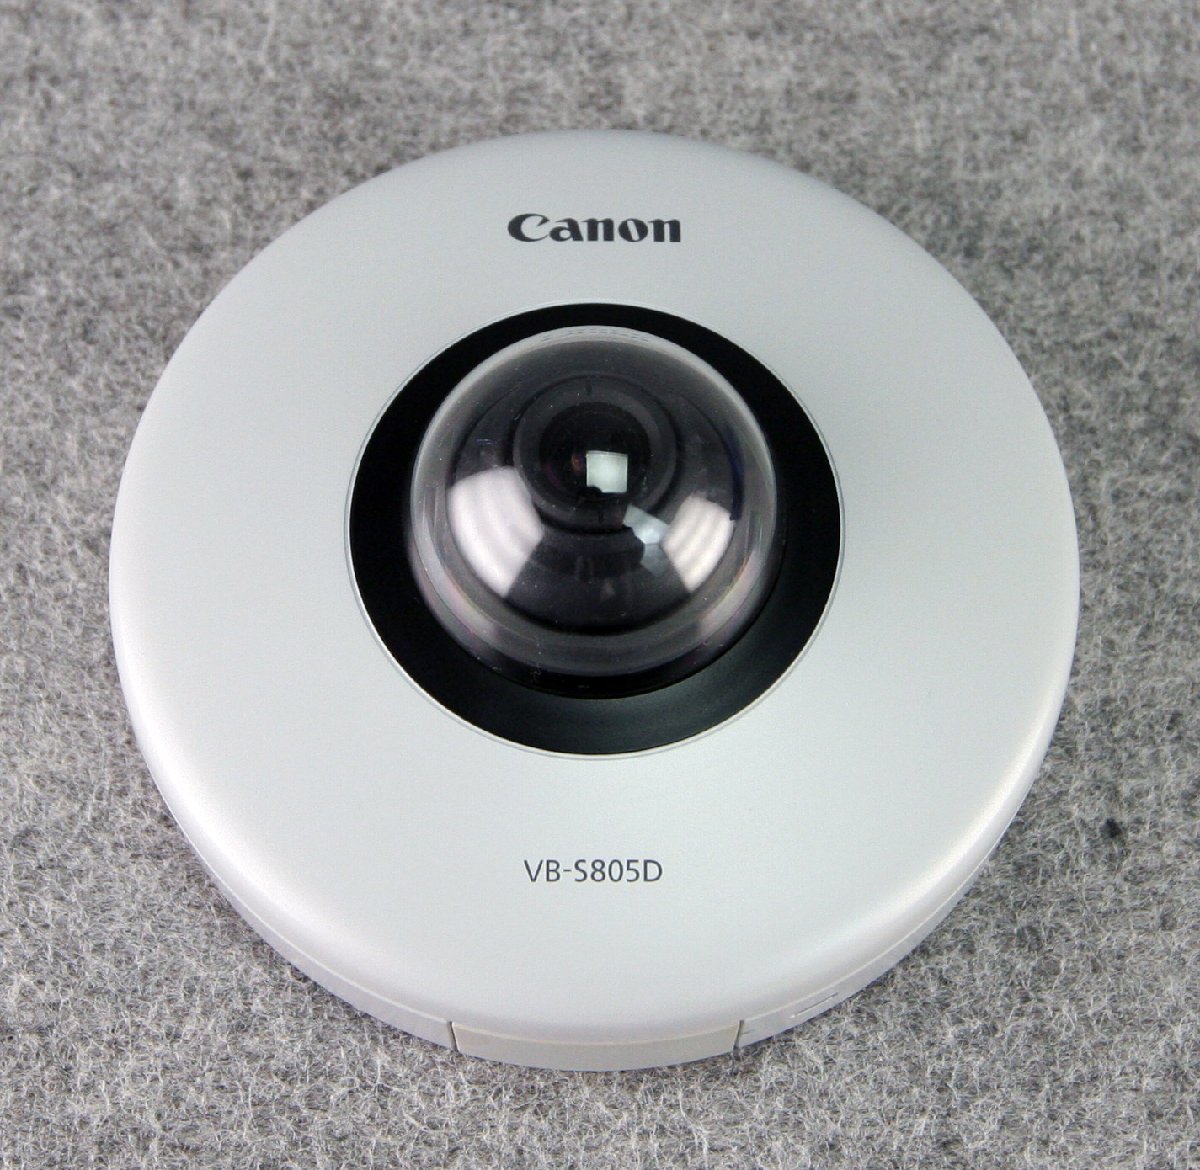 M◆CANON(キャノン)/ドーム型ネットワークカメラ/VB-S805D/PoE給電対応/有効画素数1.3メガピクセル/コンパクト/動作品(13_画像1